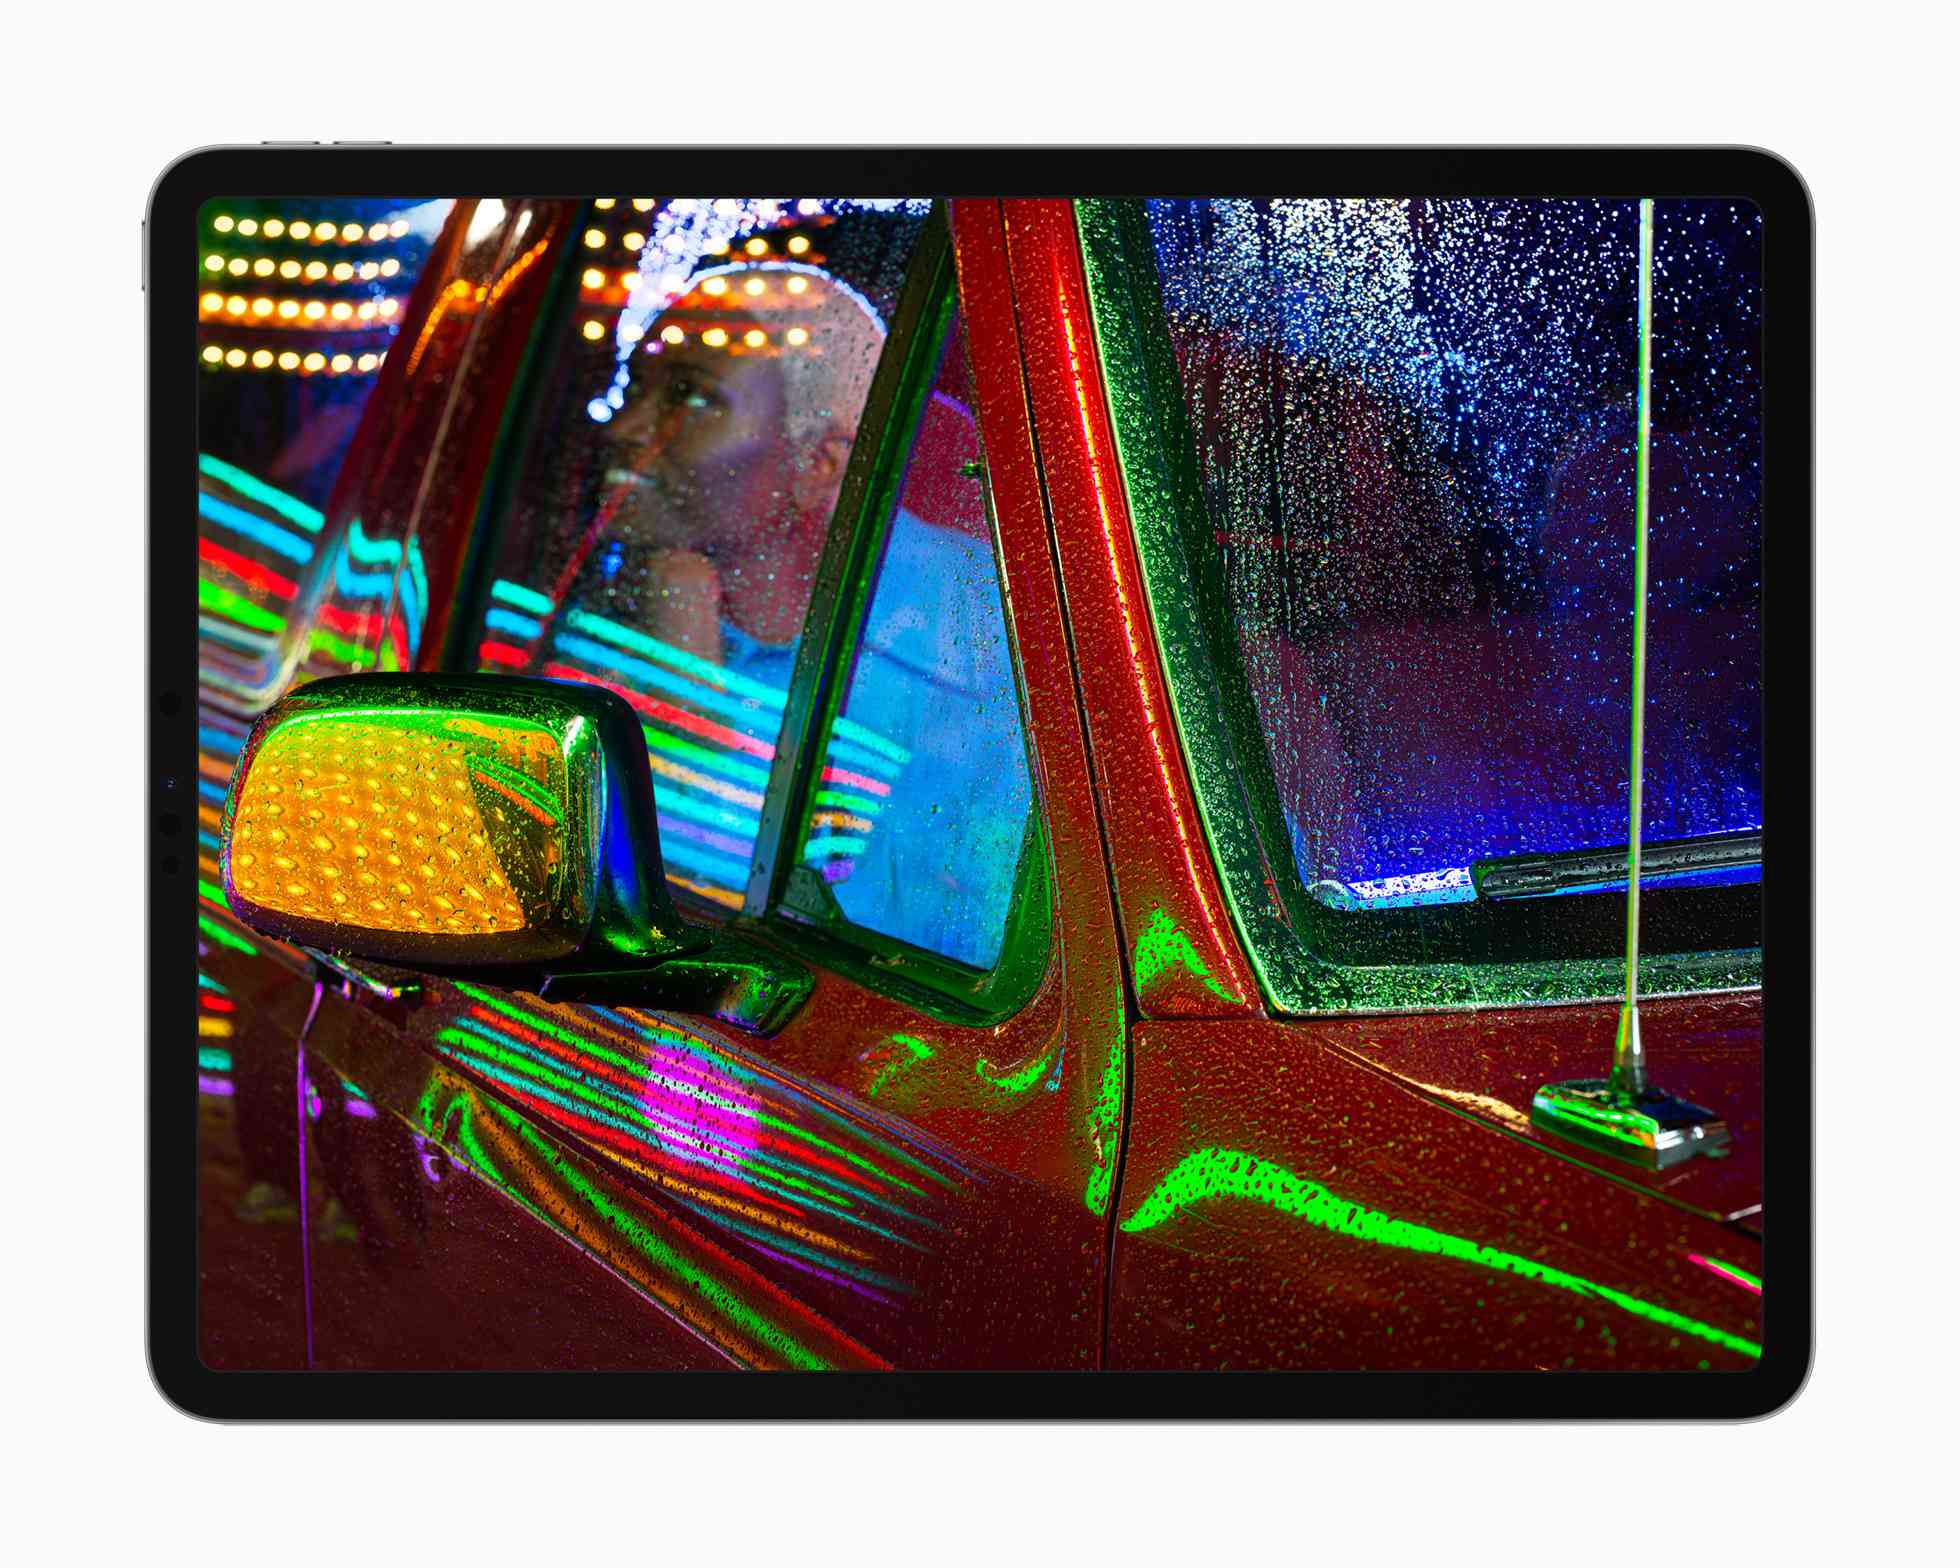 Displej Apple iPad Pro liquidXDR zobrazující fotku někoho uvnitř pickupu s neonovými světly odrážejícími se od kovu a skla.